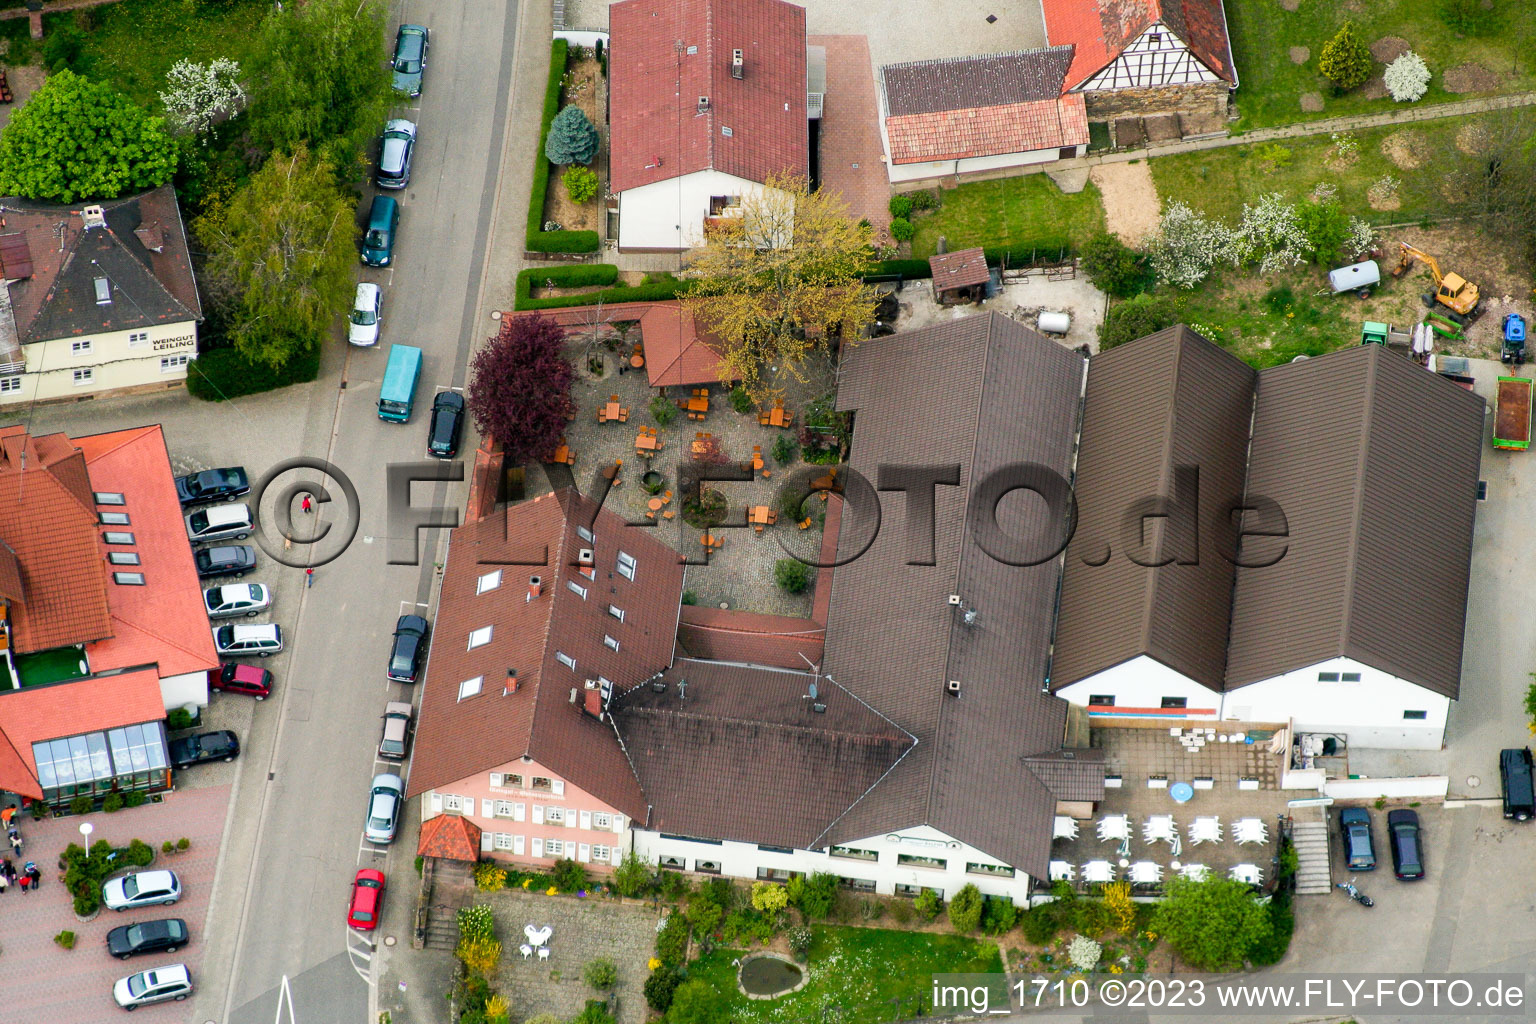 Aerial view of At the wine gate in the district Schweigen in Schweigen-Rechtenbach in the state Rhineland-Palatinate, Germany